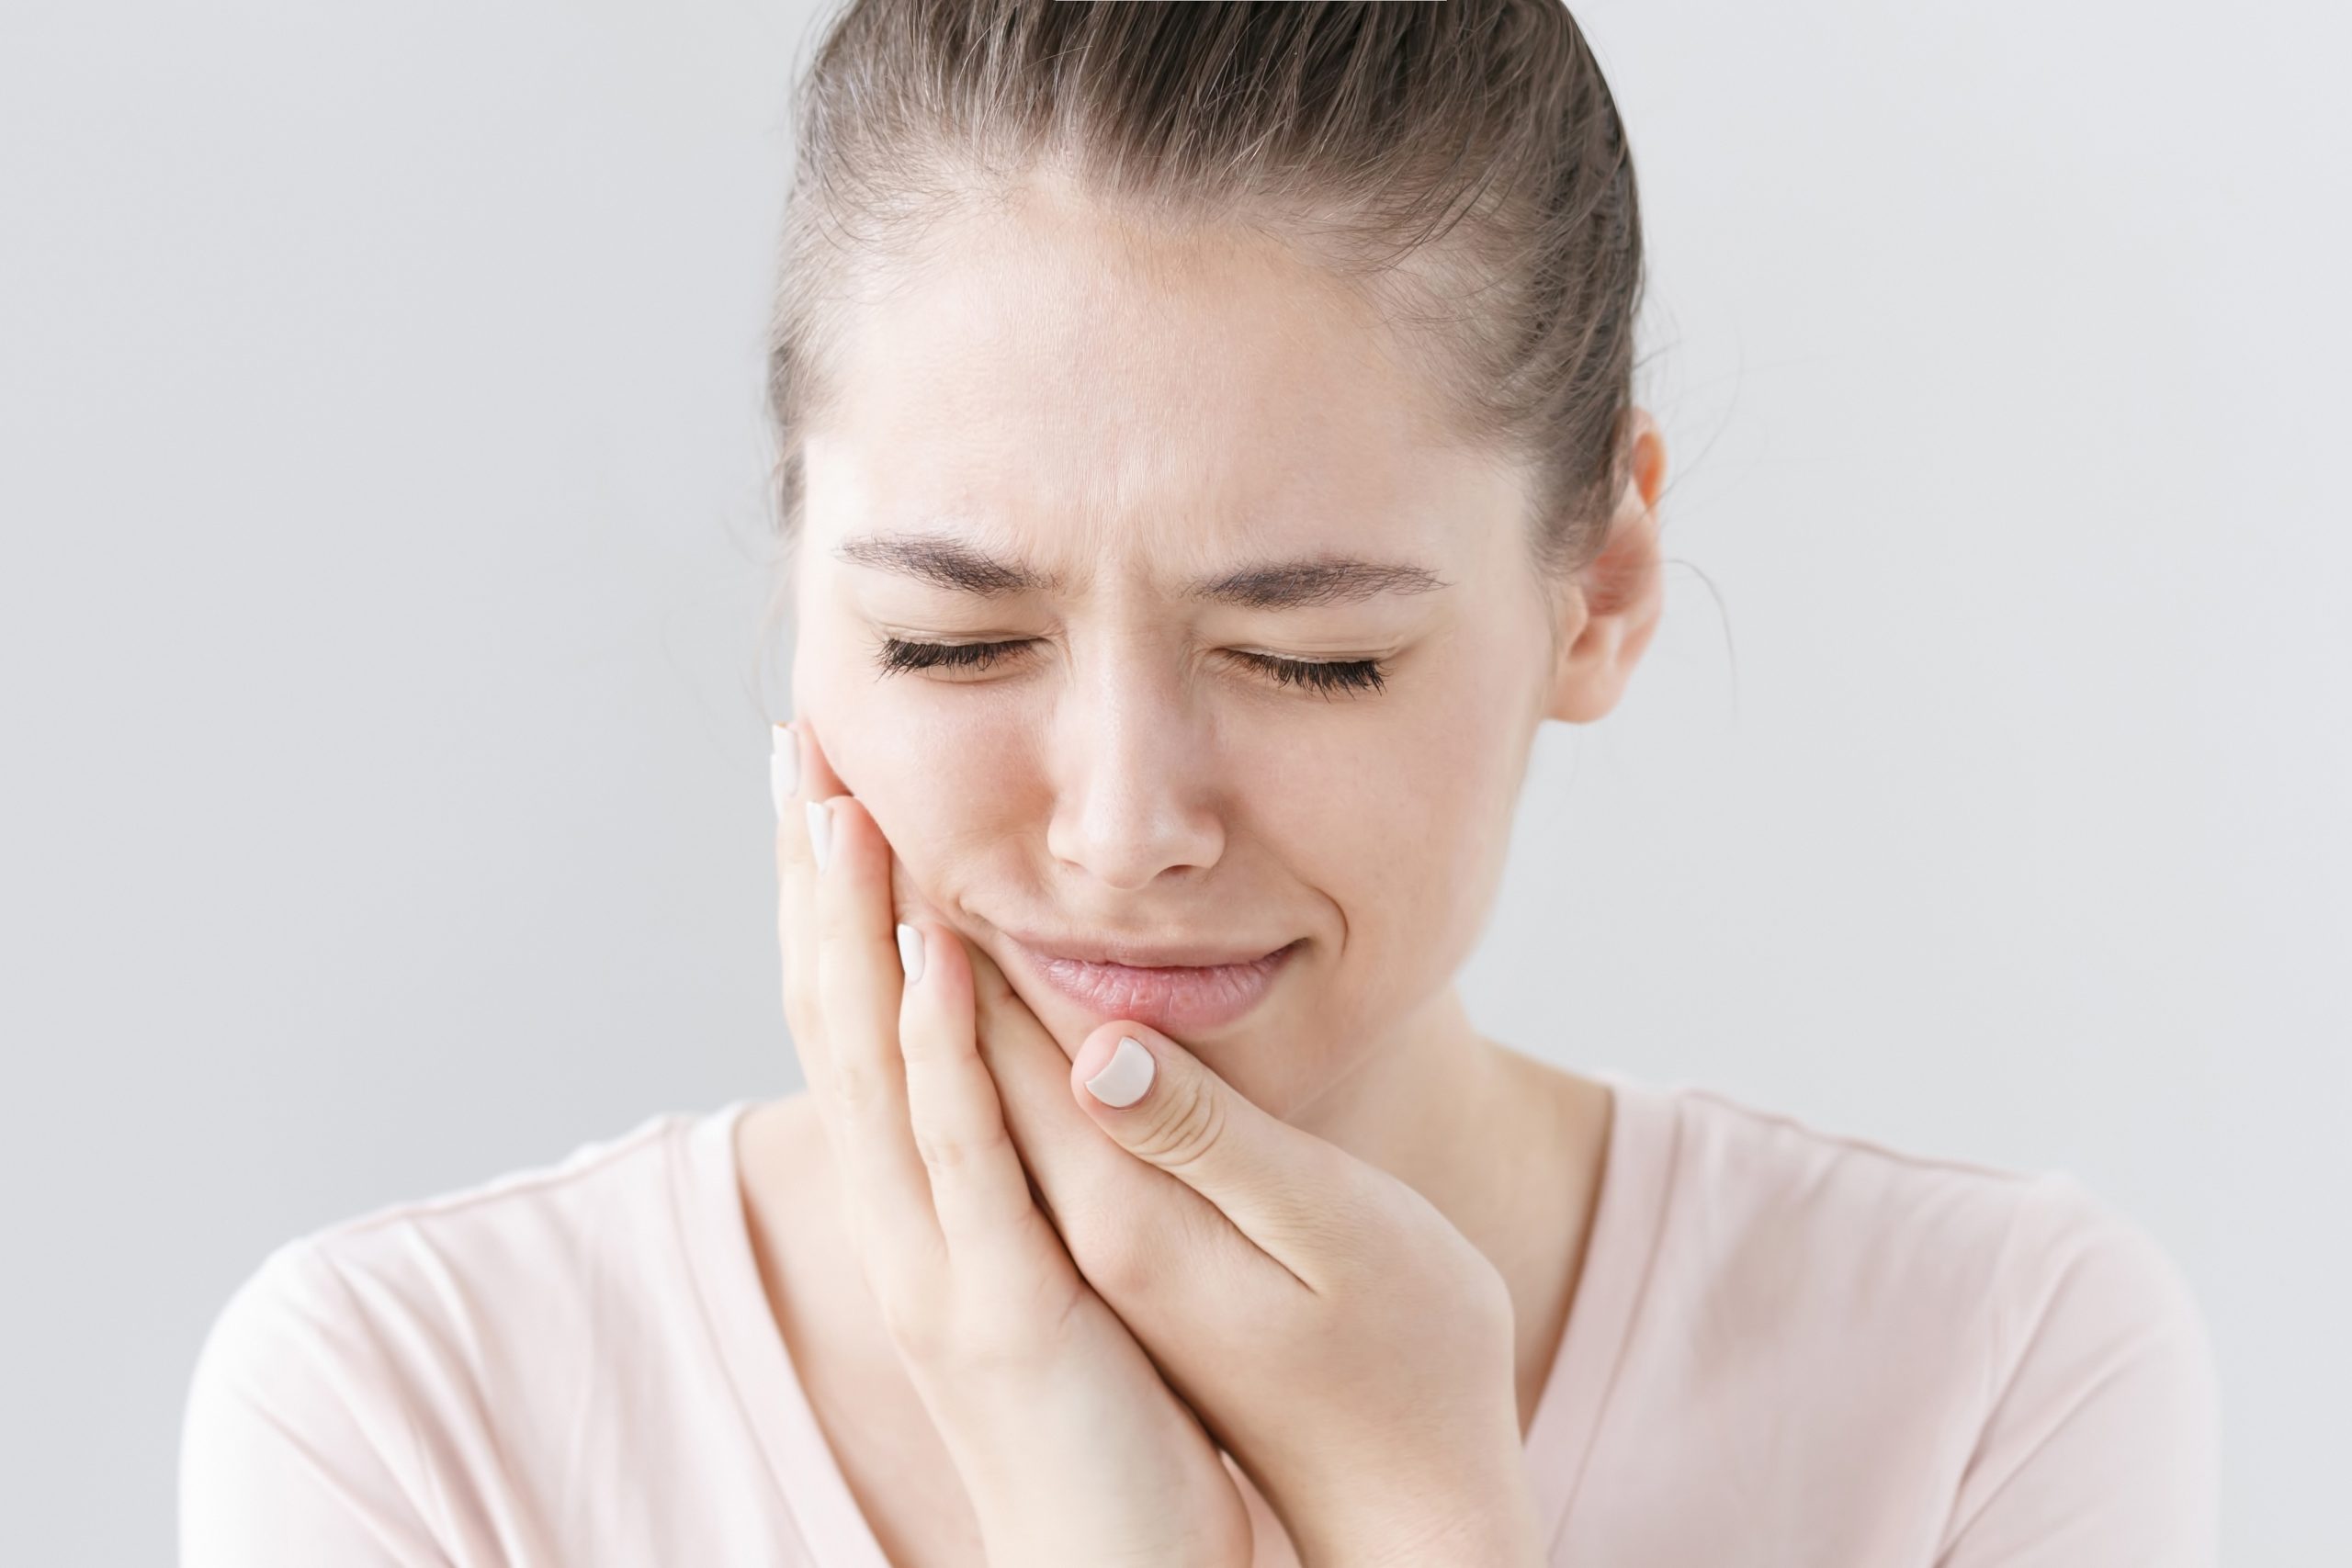  Sâu răng uống thuốc gì : Nguyên nhân, triệu chứng và cách điều trị hiệu quả